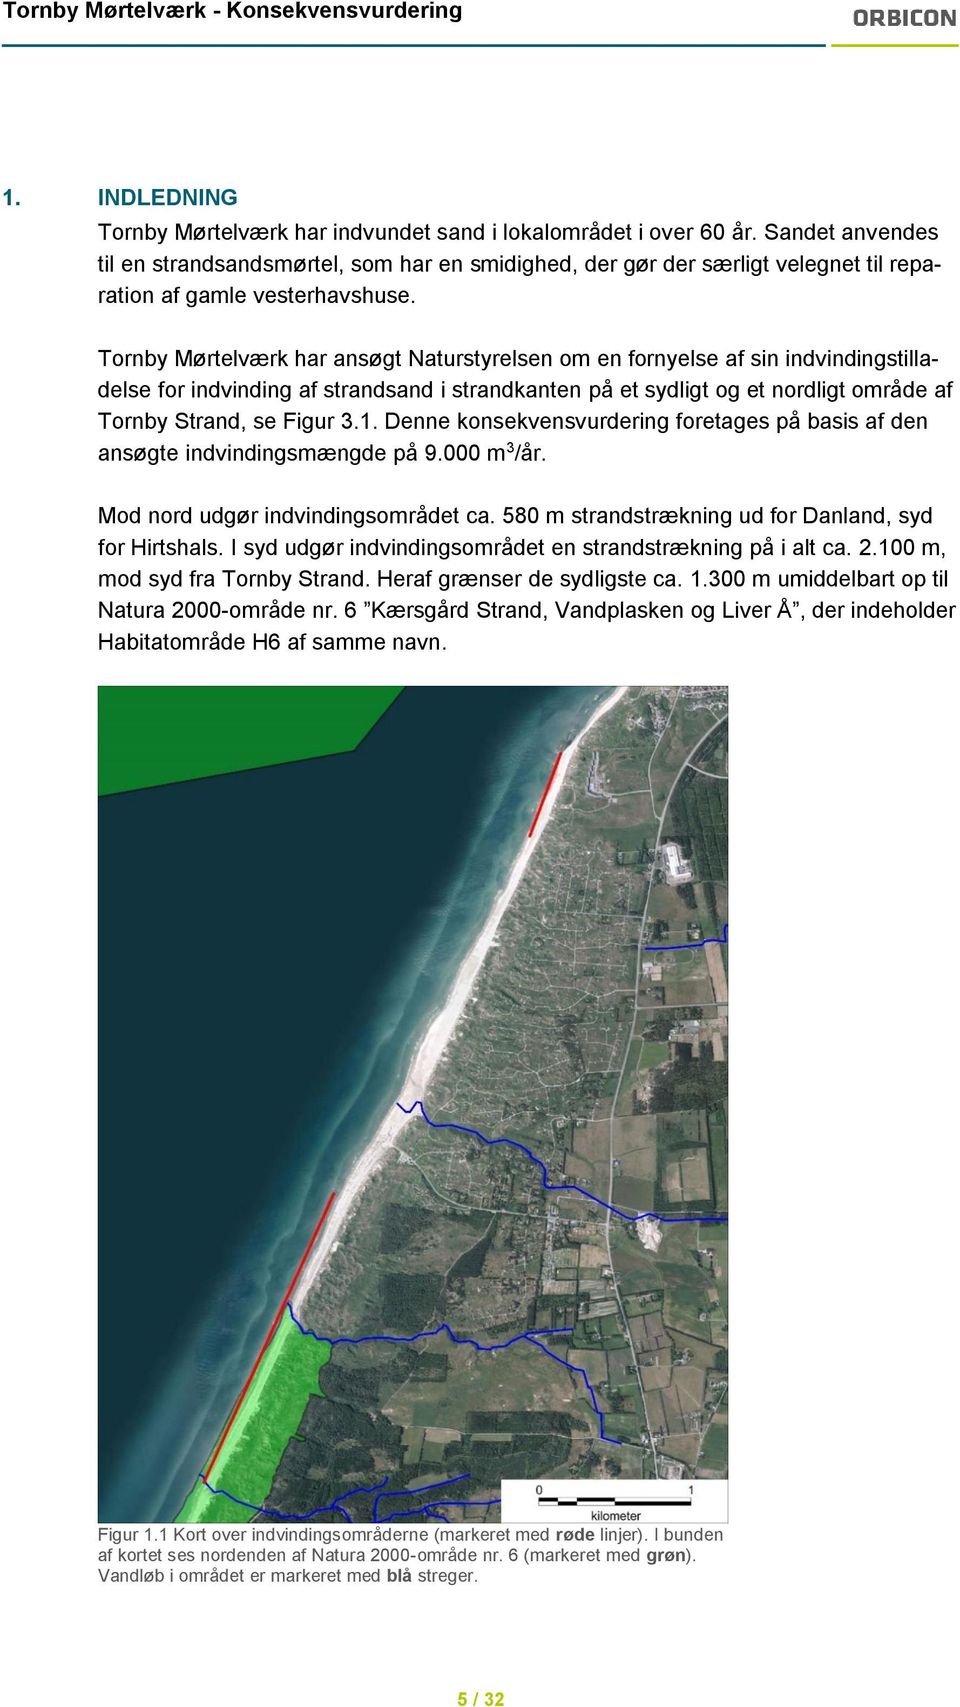 Tornby Mørtelværk har ansøgt Naturstyrelsen om en fornyelse af sin indvindingstilladelse for indvinding af strandsand i strandkanten på et sydligt og et nordligt område af Tornby Strand, se Figur 3.1.